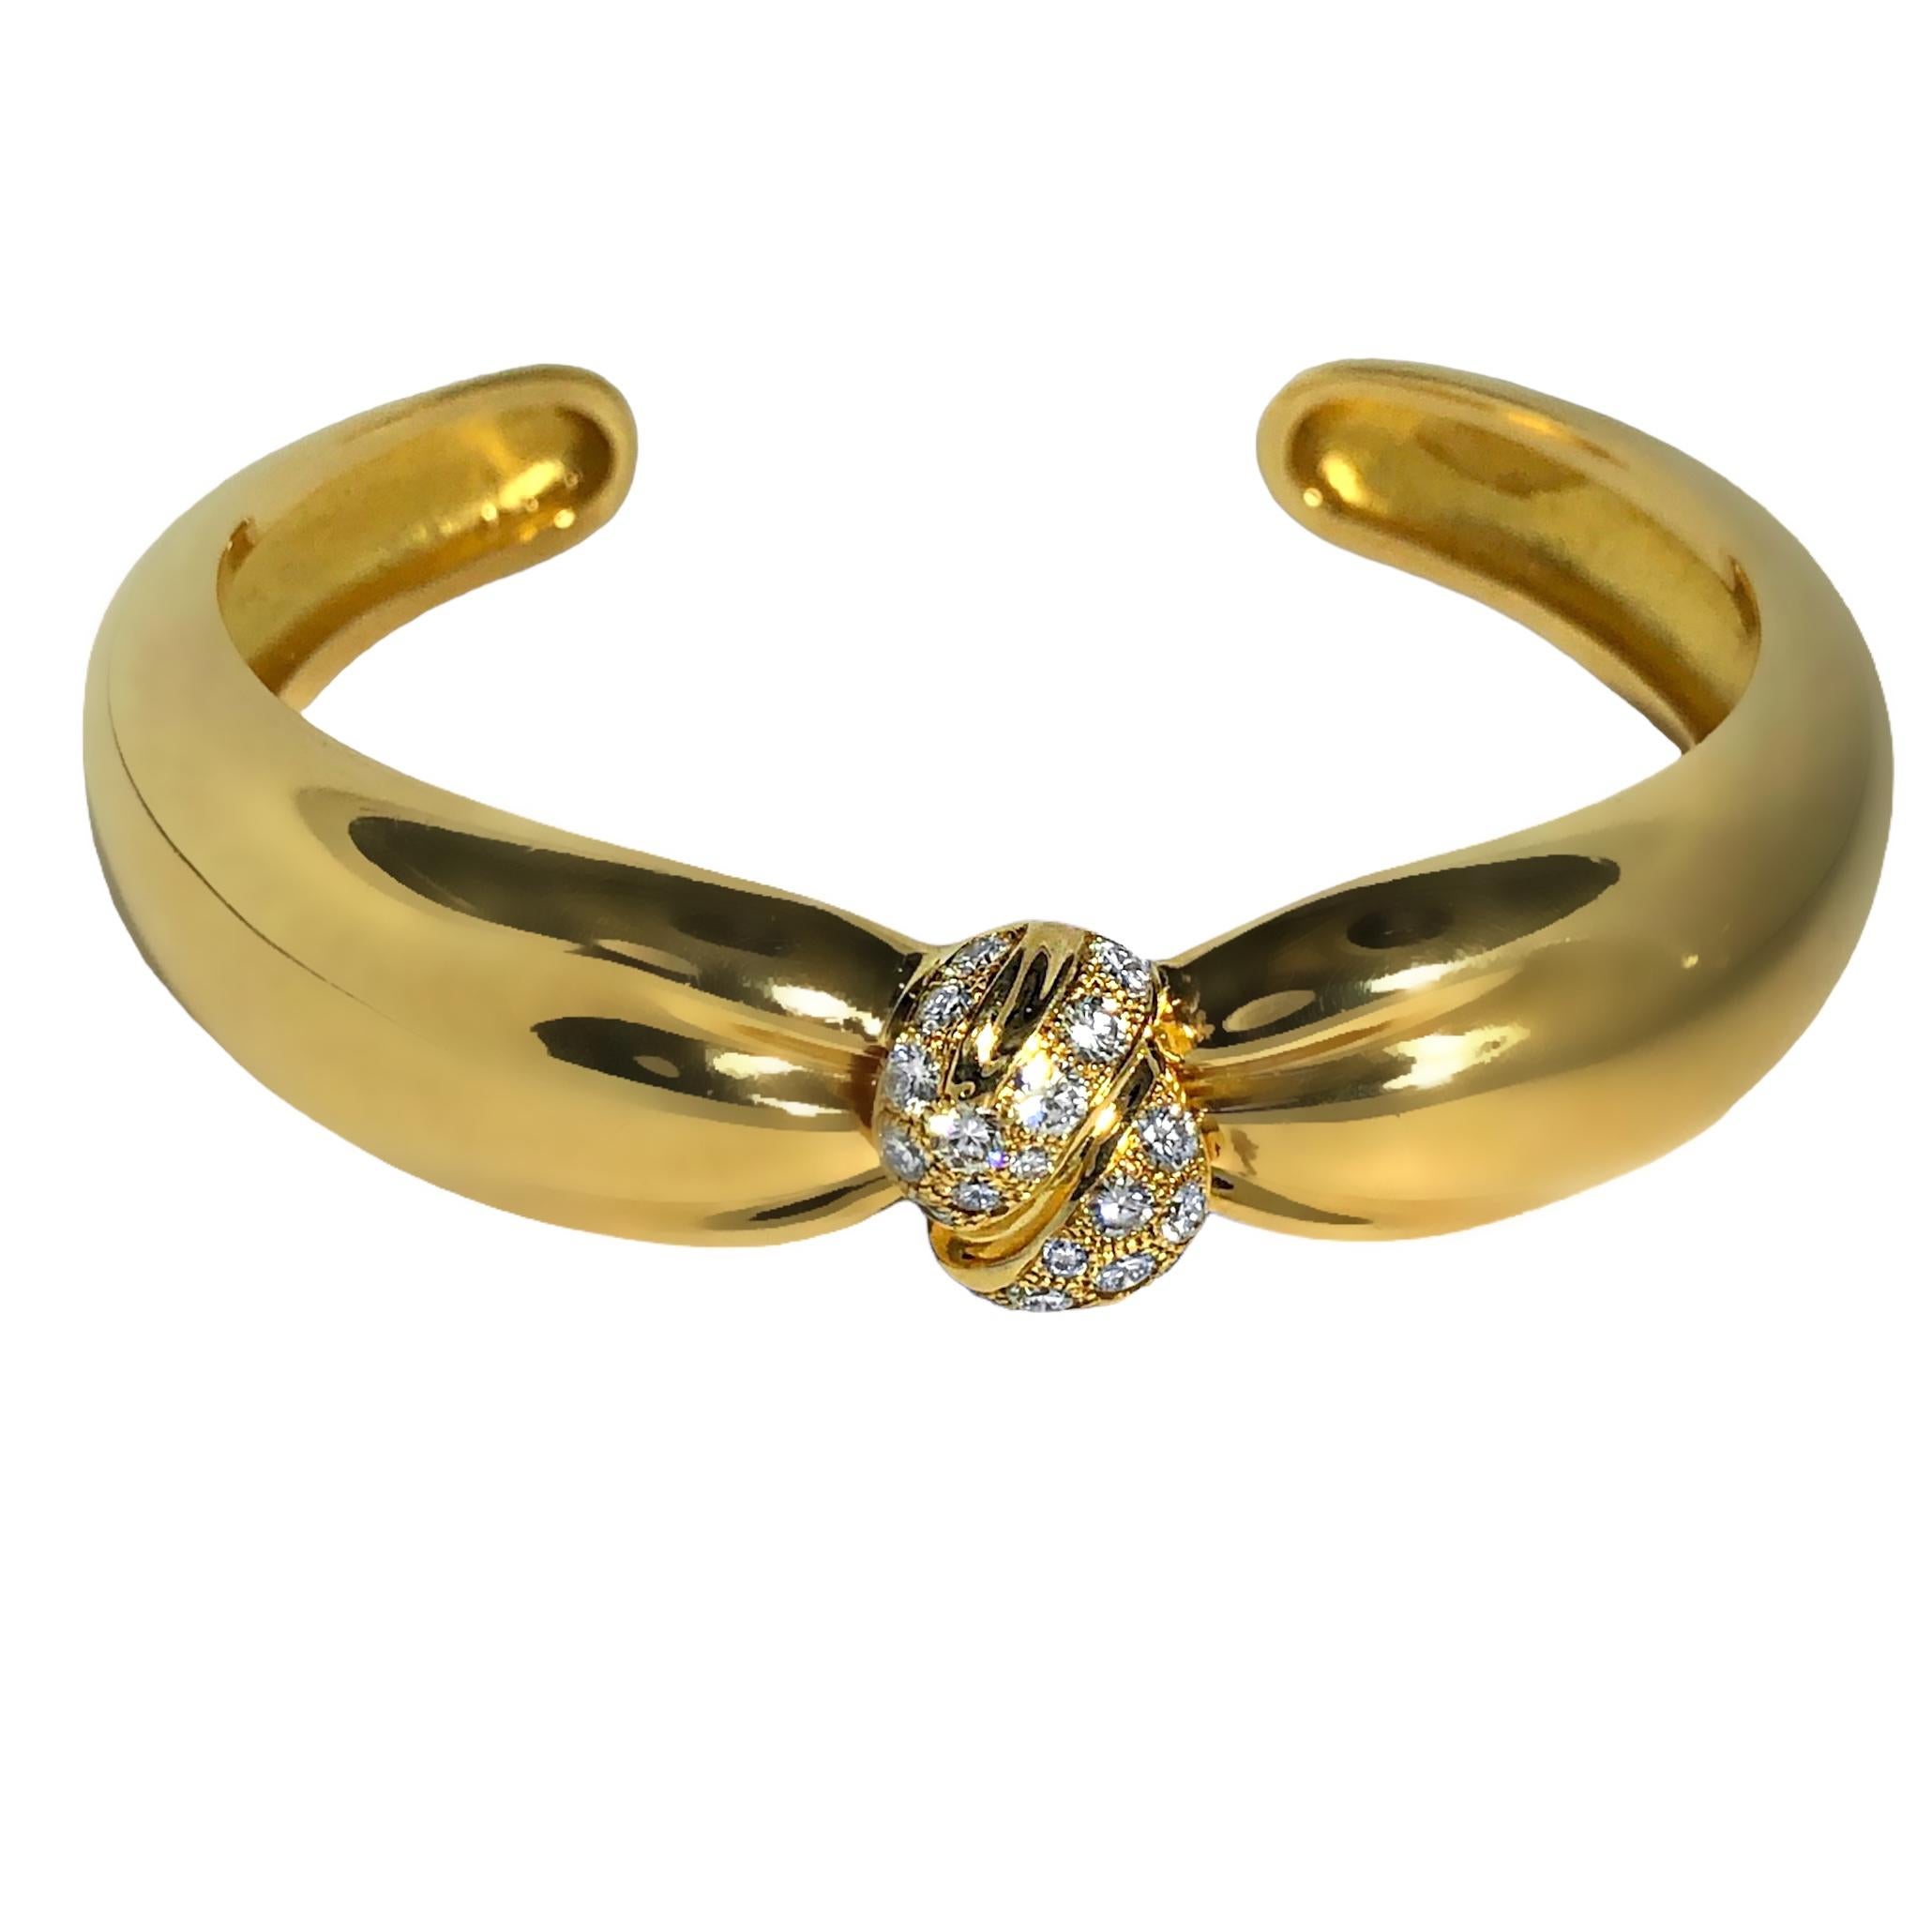 Cette belle  Le bracelet VCA, fabriqué en or jaune 18 carats, a la forme d'une bombe torsadée avec un nœud central incrusté de diamants. L'esthétique du design est magnifiquement mise en valeur par l'or riche et bruni juxtaposé à la blancheur